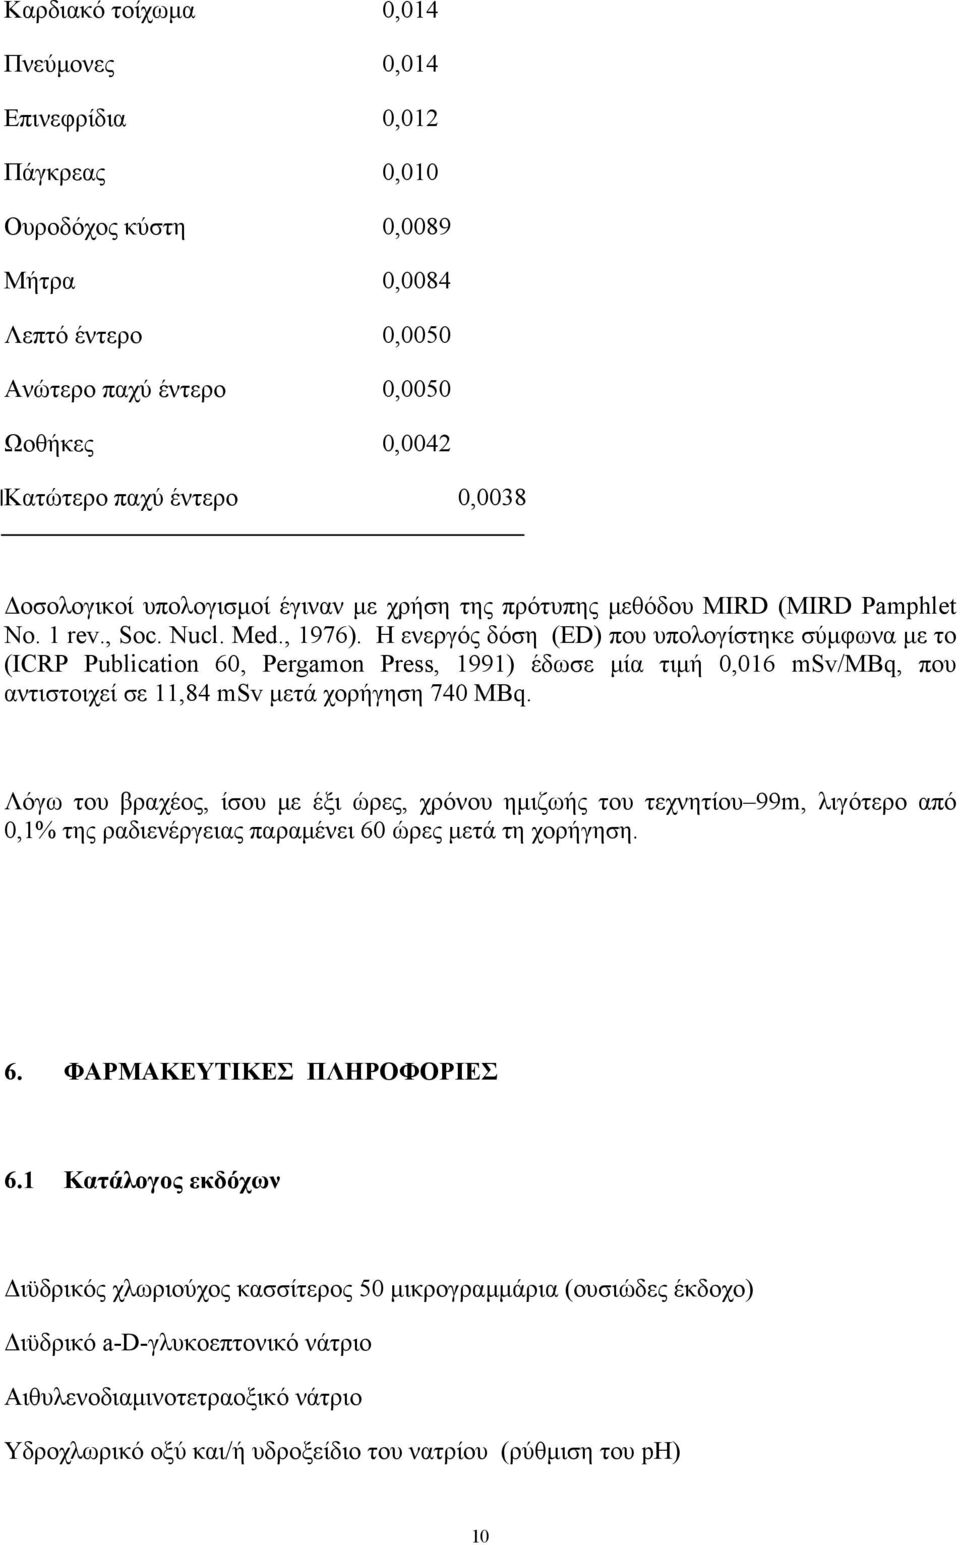 Η ενεργός δόση (ED) που υπολογίστηκε σύμφωνα με το (ICRP Publication 60, Pergamon Press, 1991) έδωσε μία τιμή 0,016 msv/mbq, που αντιστοιχεί σε 11,84 msv μετά χορήγηση 740 MBq.